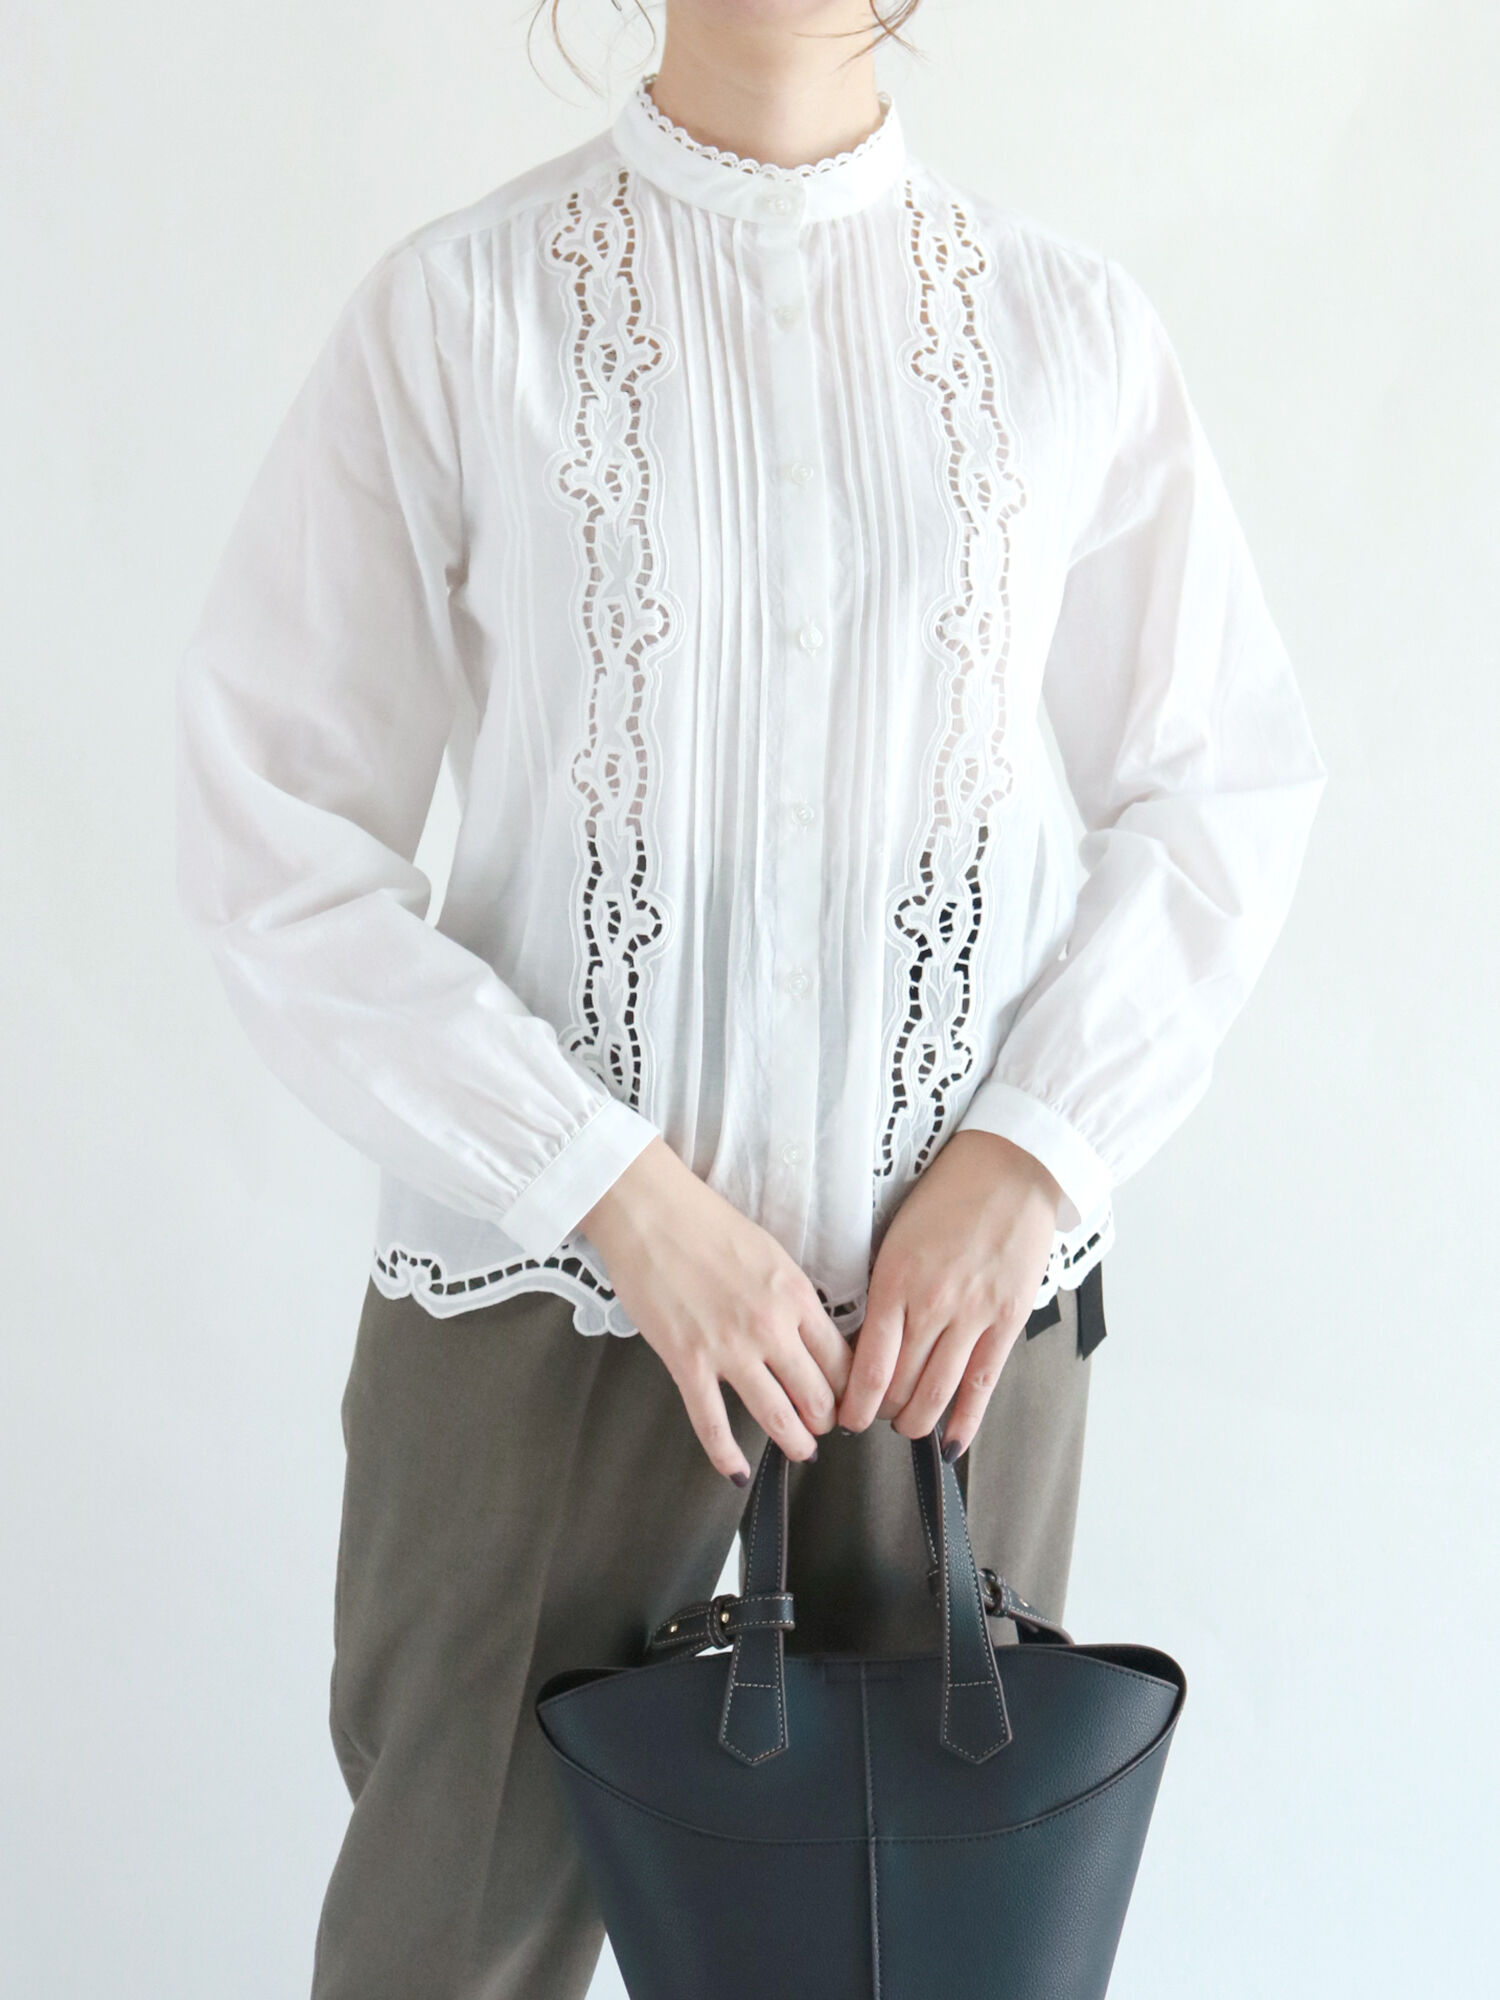 刺繍ハイネックブラウス / Te chichi(テチチ)のシャツ・ブラウス ファッション通販のSTRIPE CLUB